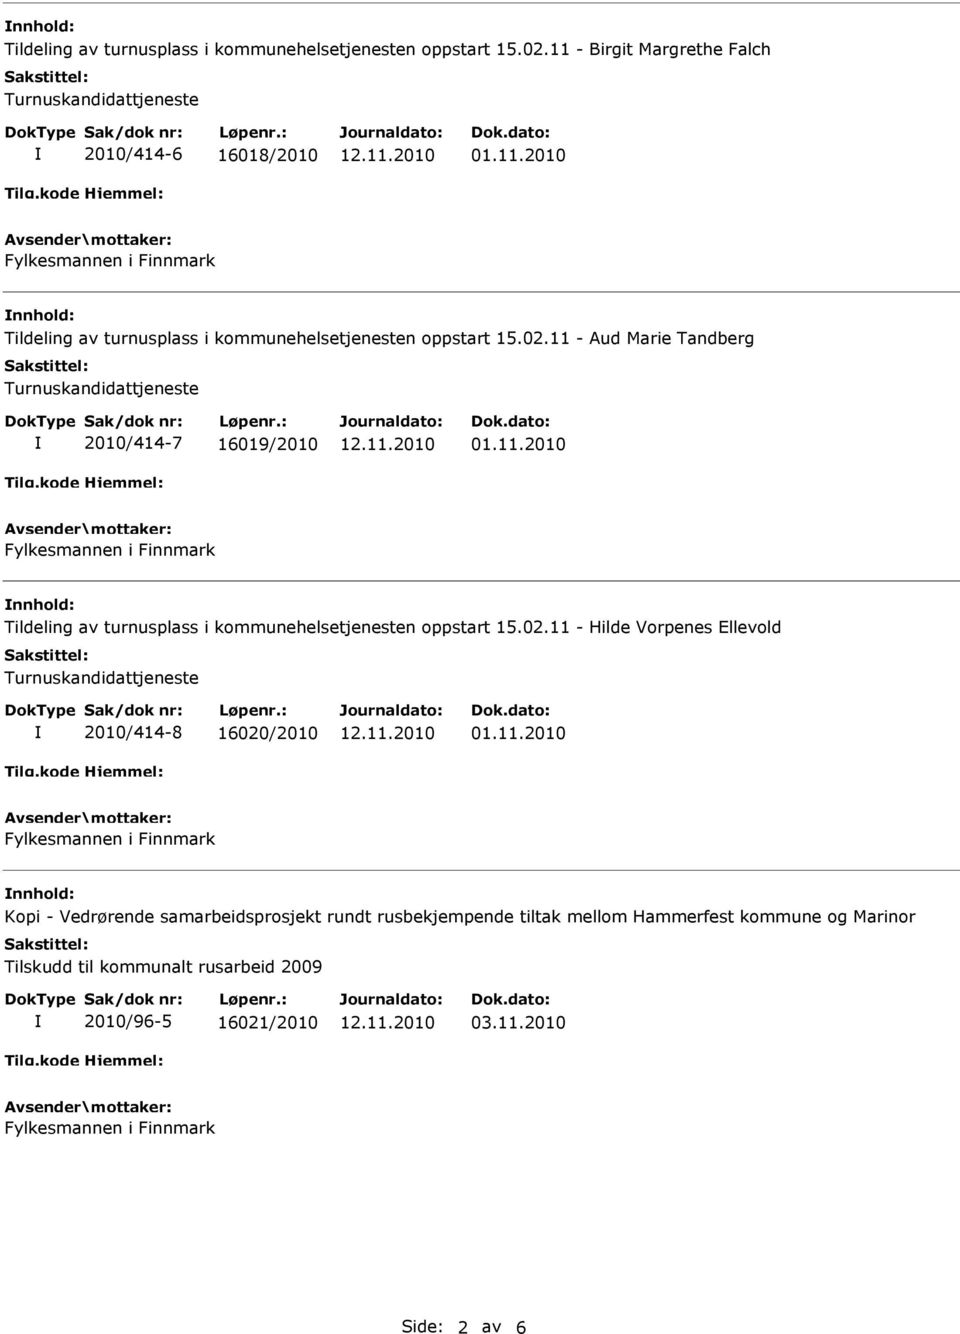 Vorpenes llevold Turnuskandidattjeneste 2010/414-8 16020/2010 nnhold: Kopi - Vedrørende samarbeidsprosjekt rundt rusbekjempende tiltak mellom Hammerfest